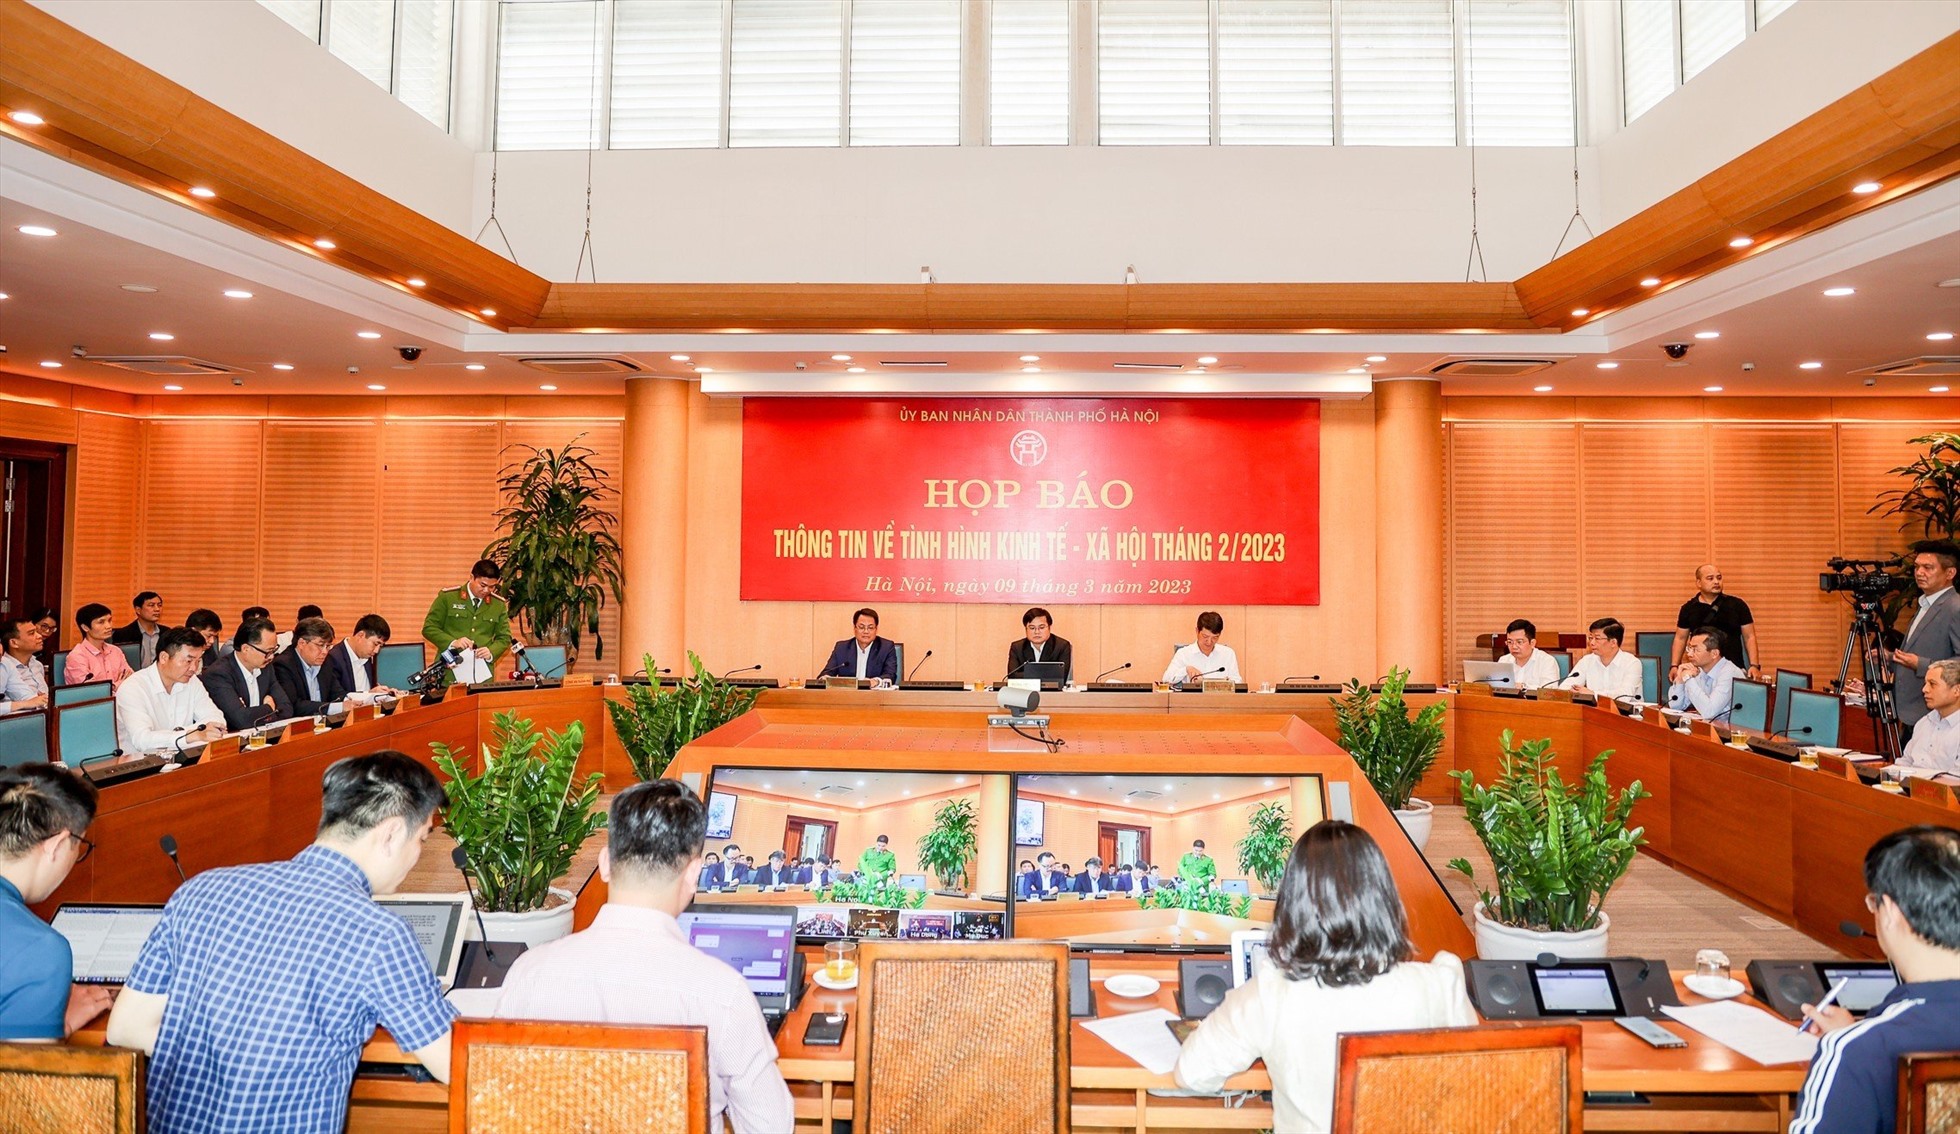 Toàn cảnh buổi họp báo của UBND thành phố Hà Nội. Ảnh: Phạm Đông